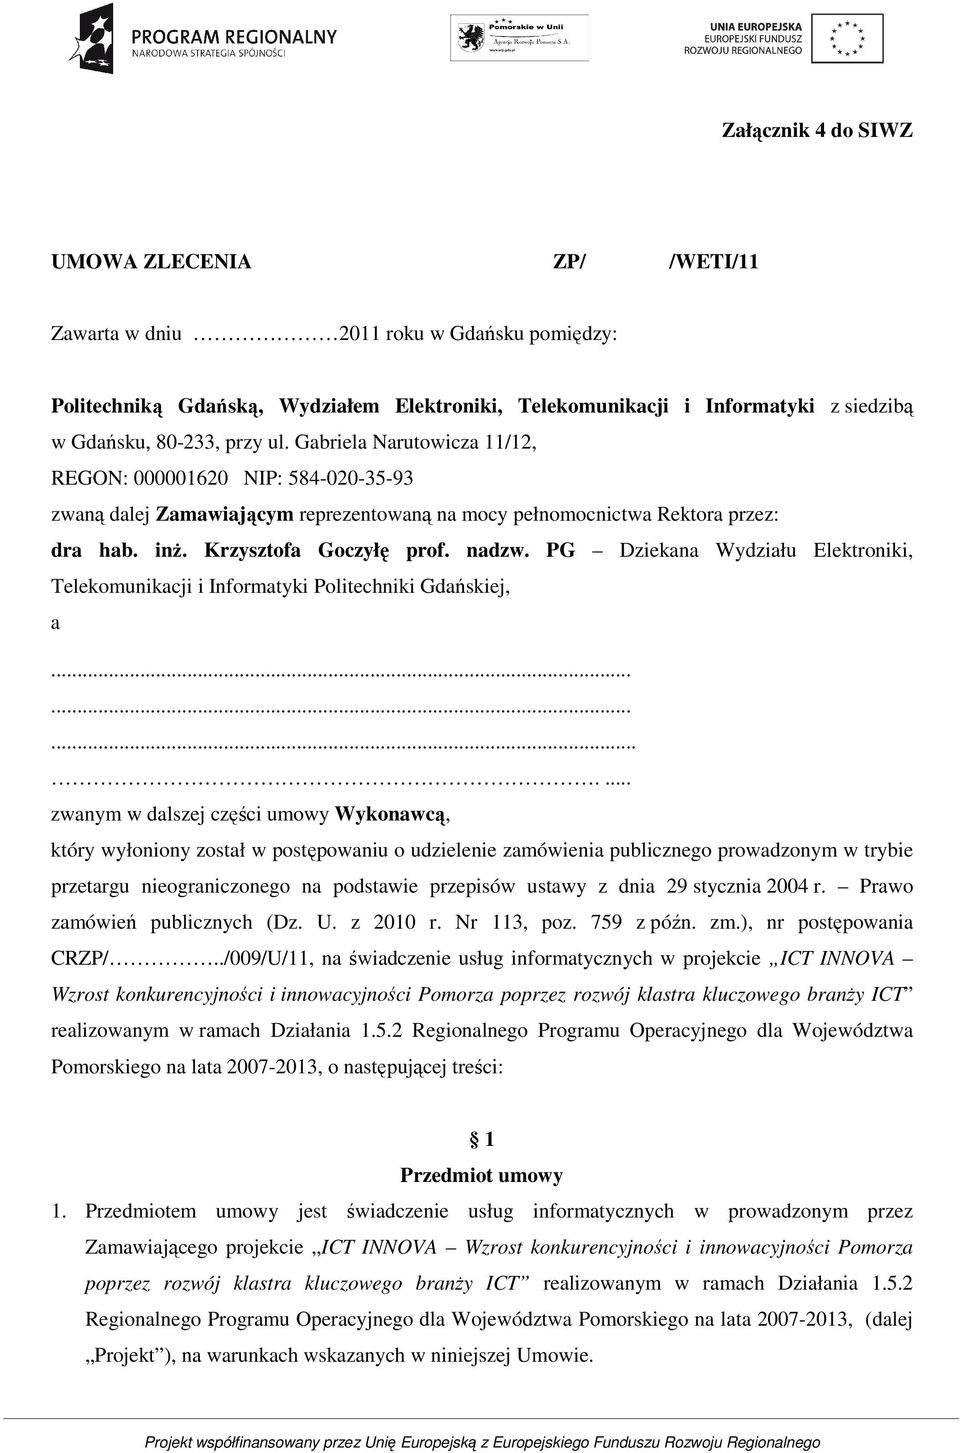 PG Dziekana Wydziału Elektroniki, Telekomunikacji i Informatyki Politechniki Gdańskiej, a.